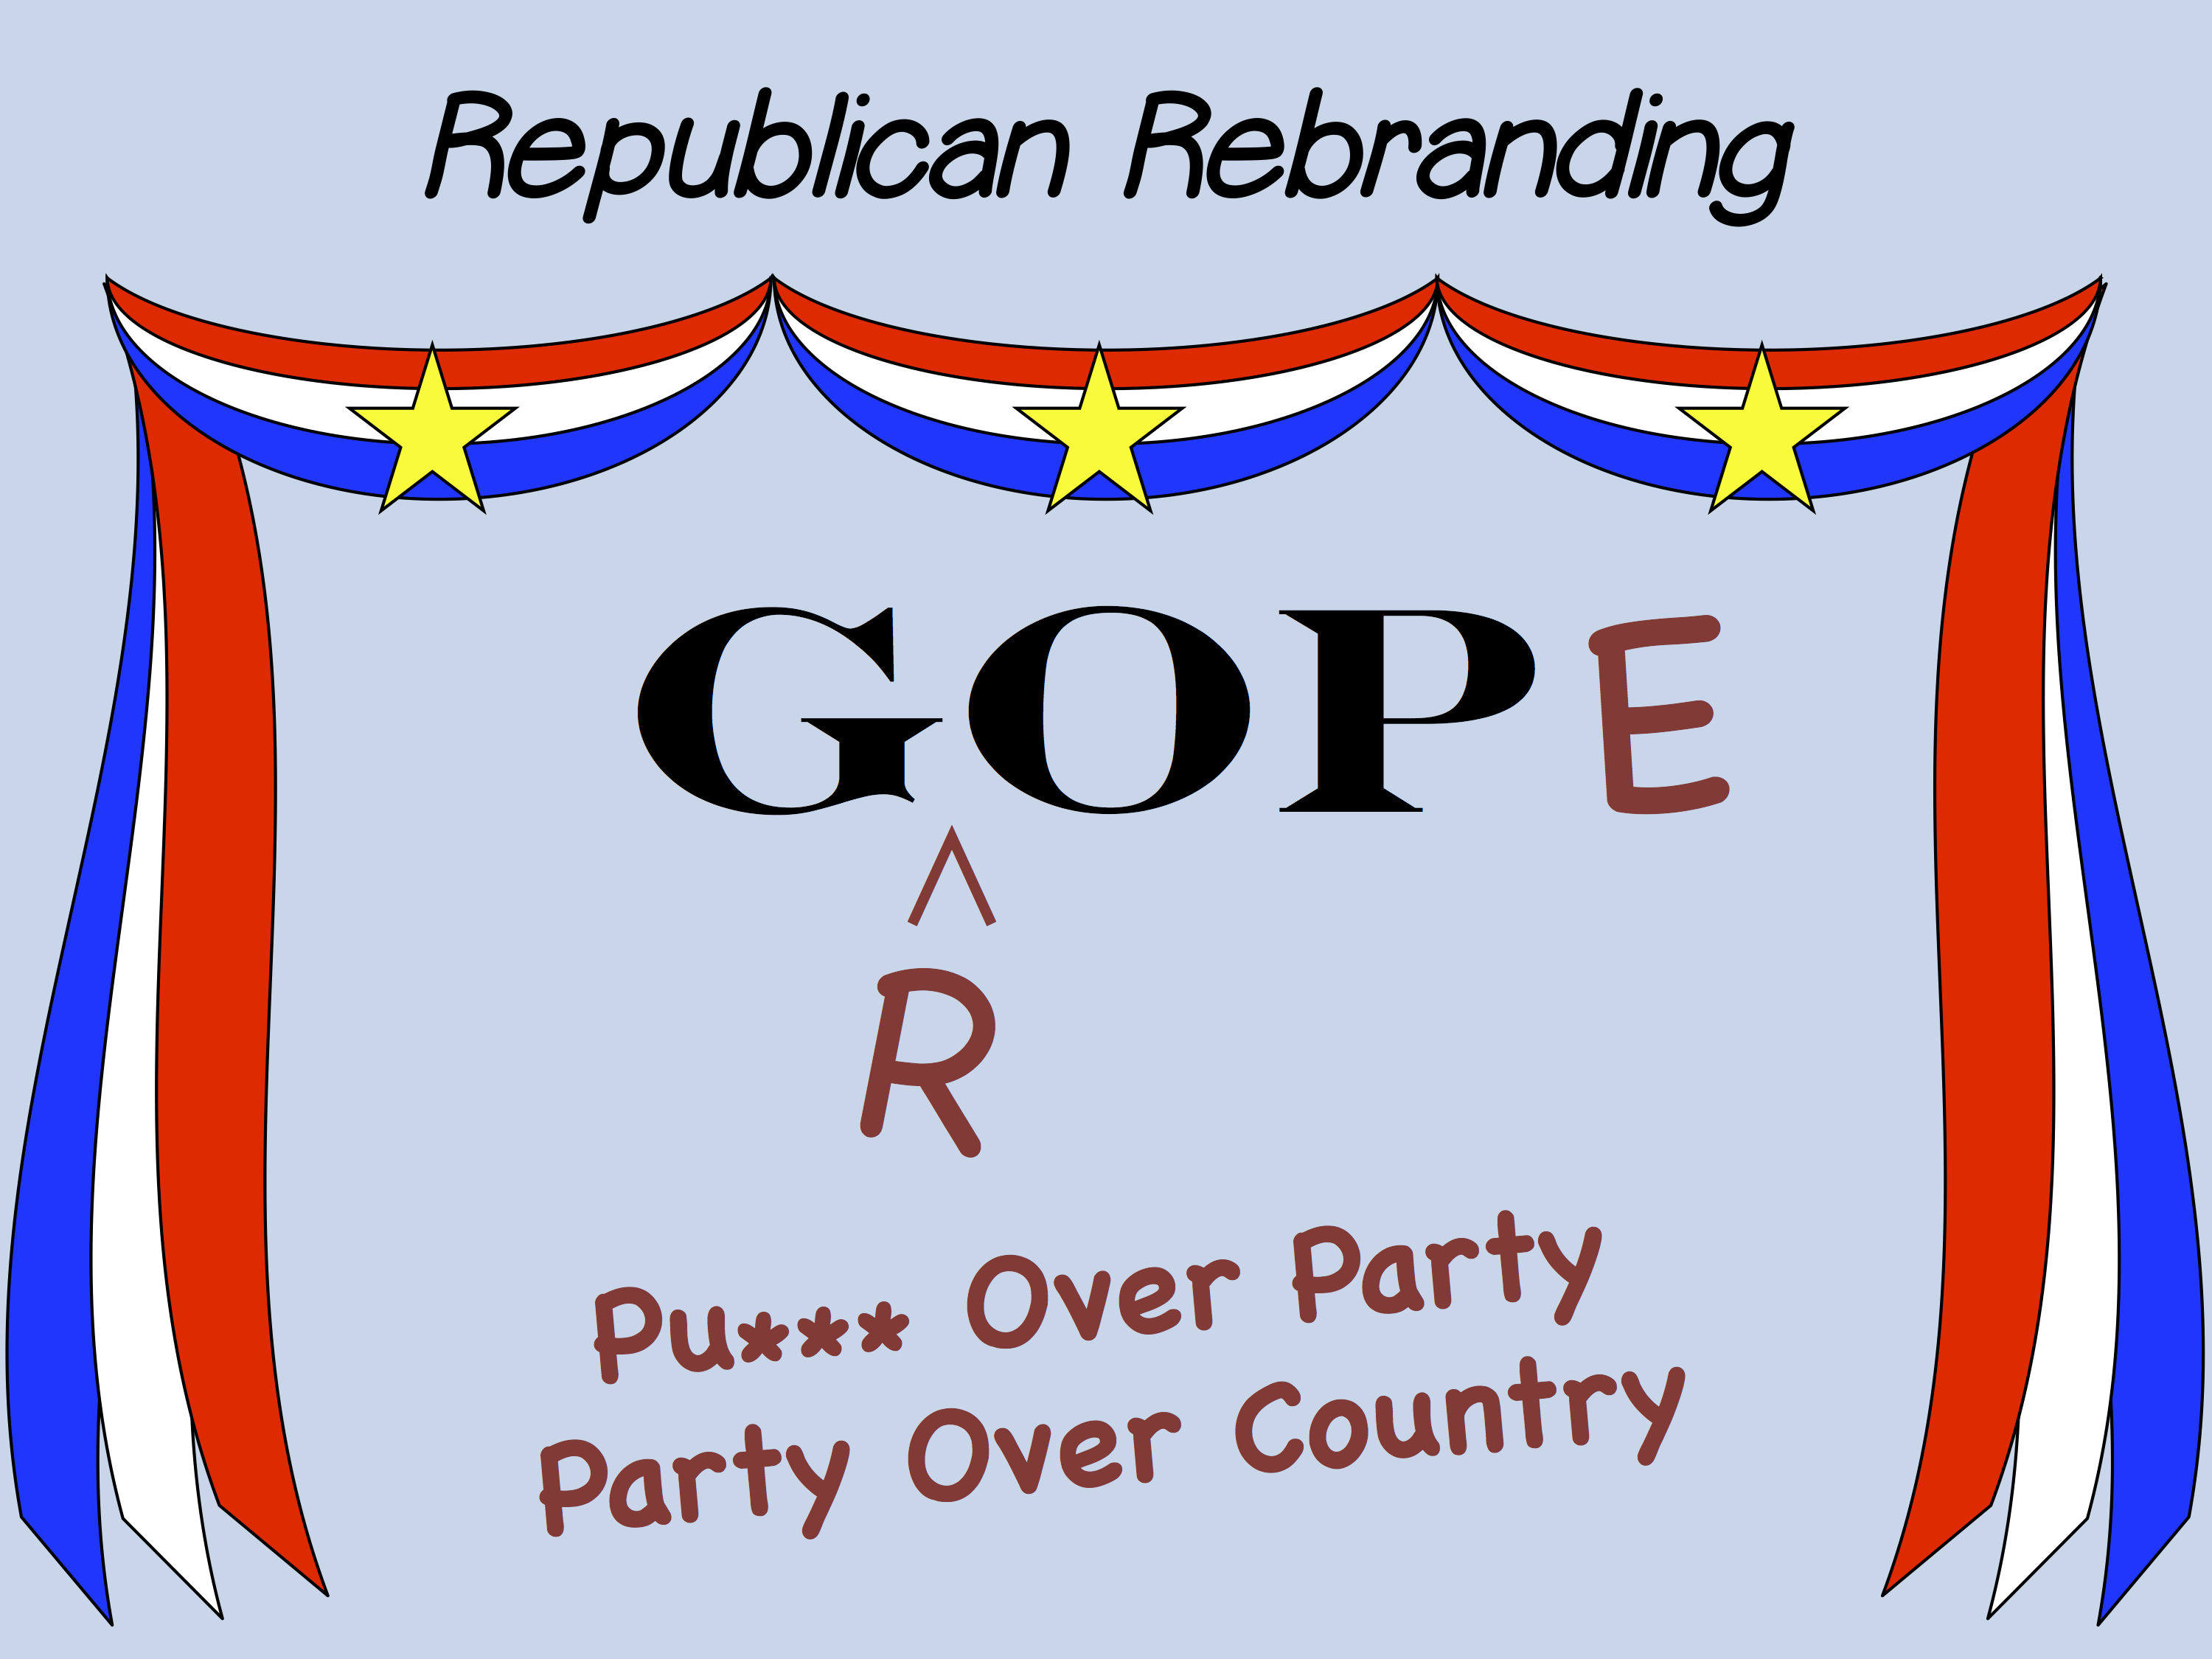 Republican Rebranding (GROPE)